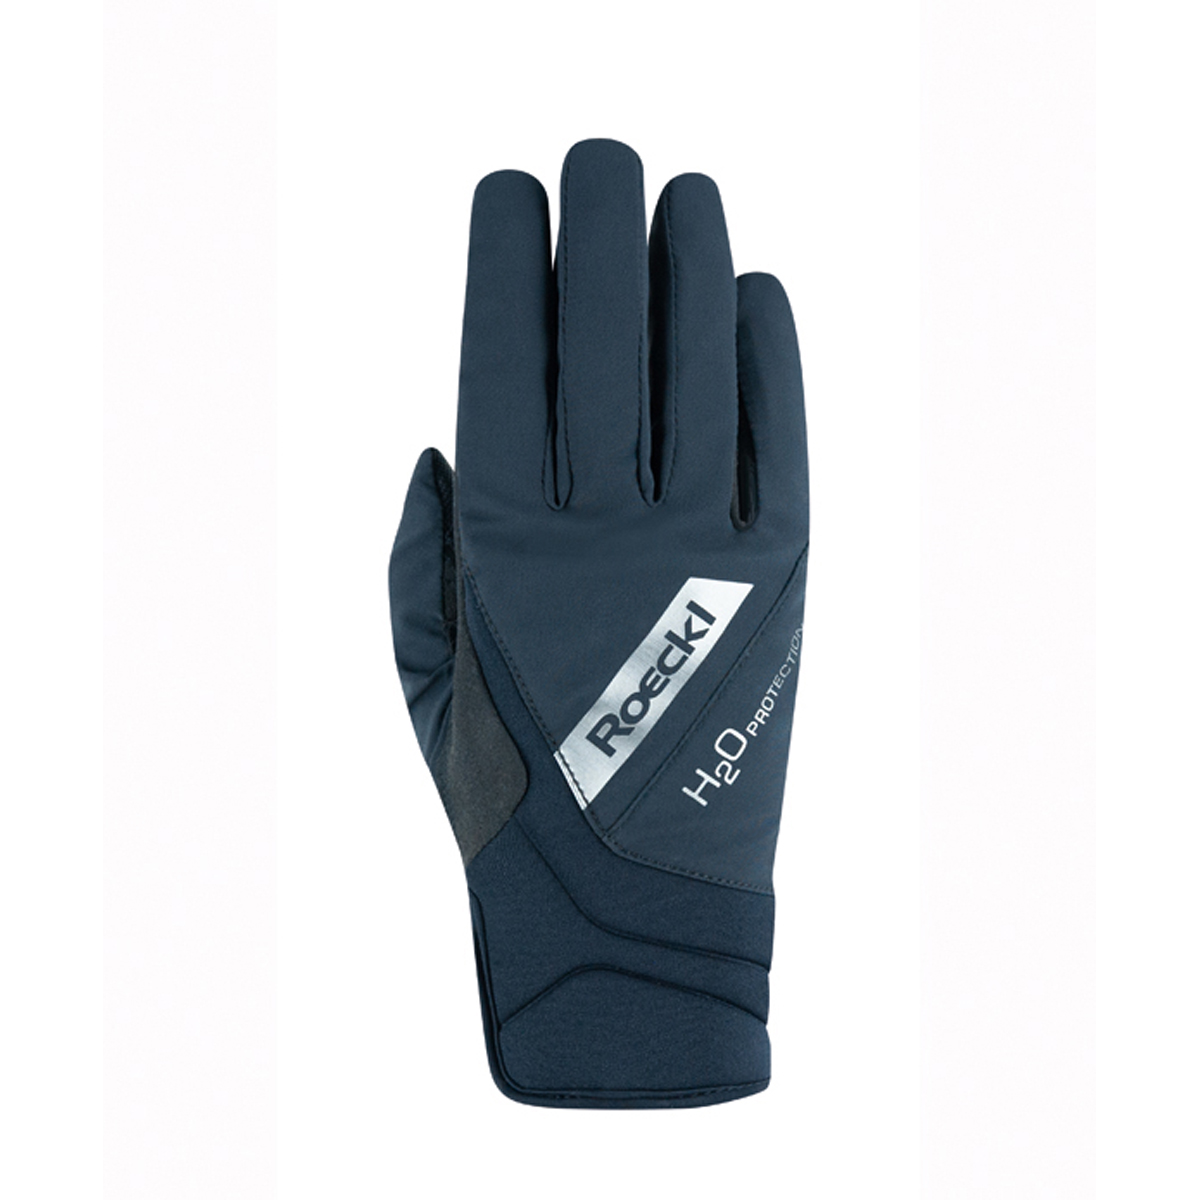 Handschoenen Roeckl Waregem, 6 in zwart